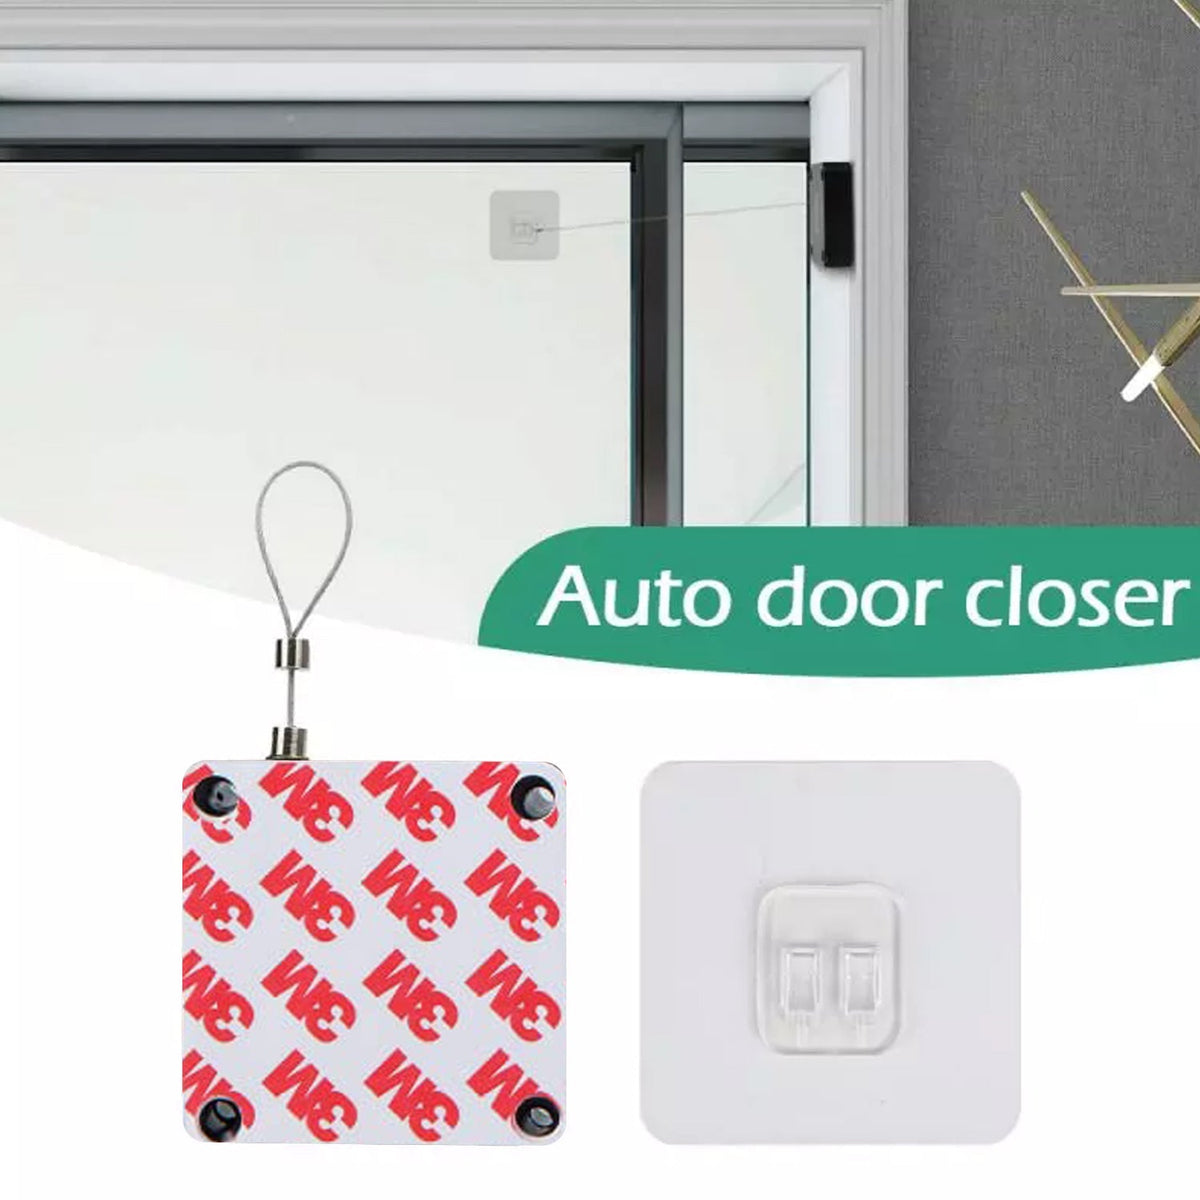 4184 Automatic Door Closer Punch-Free Automatic Sensor Door Closer